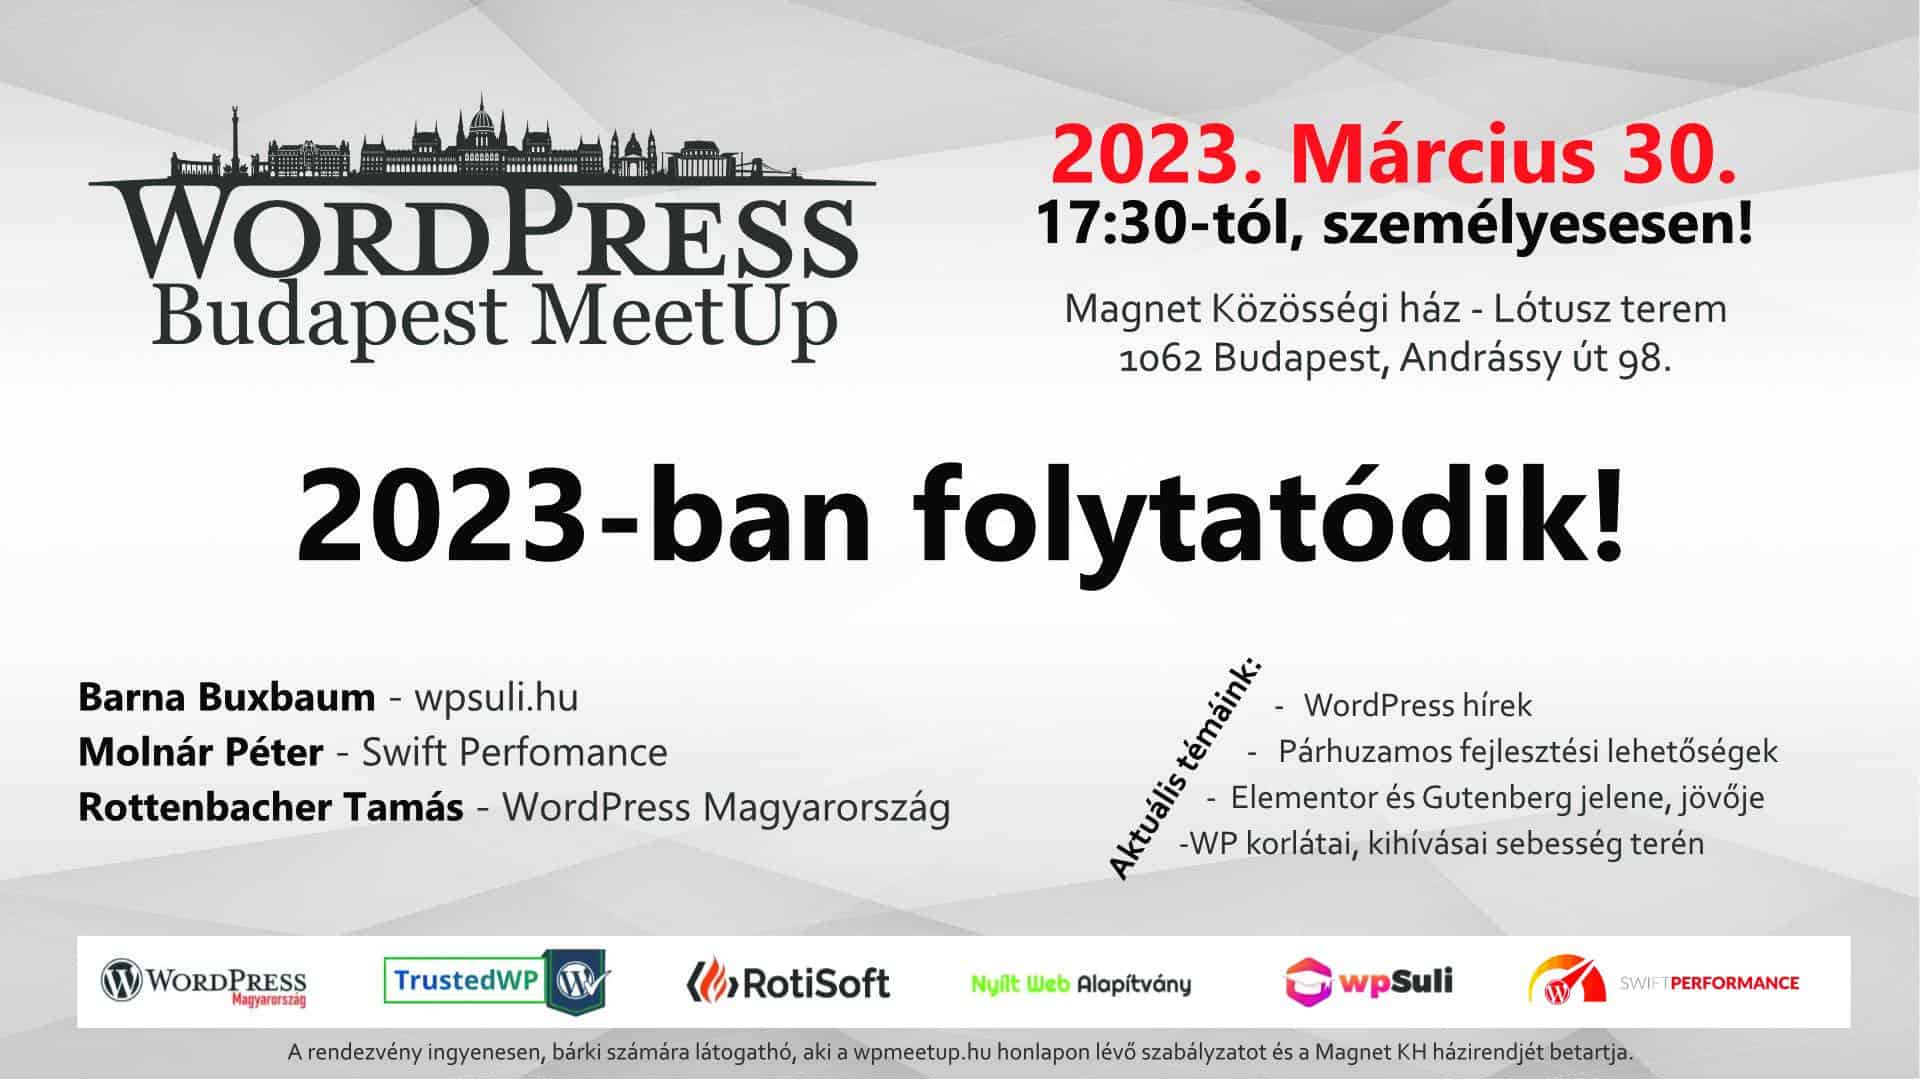 2023-ban folytatódik a WordPress Budapest MeetUp!